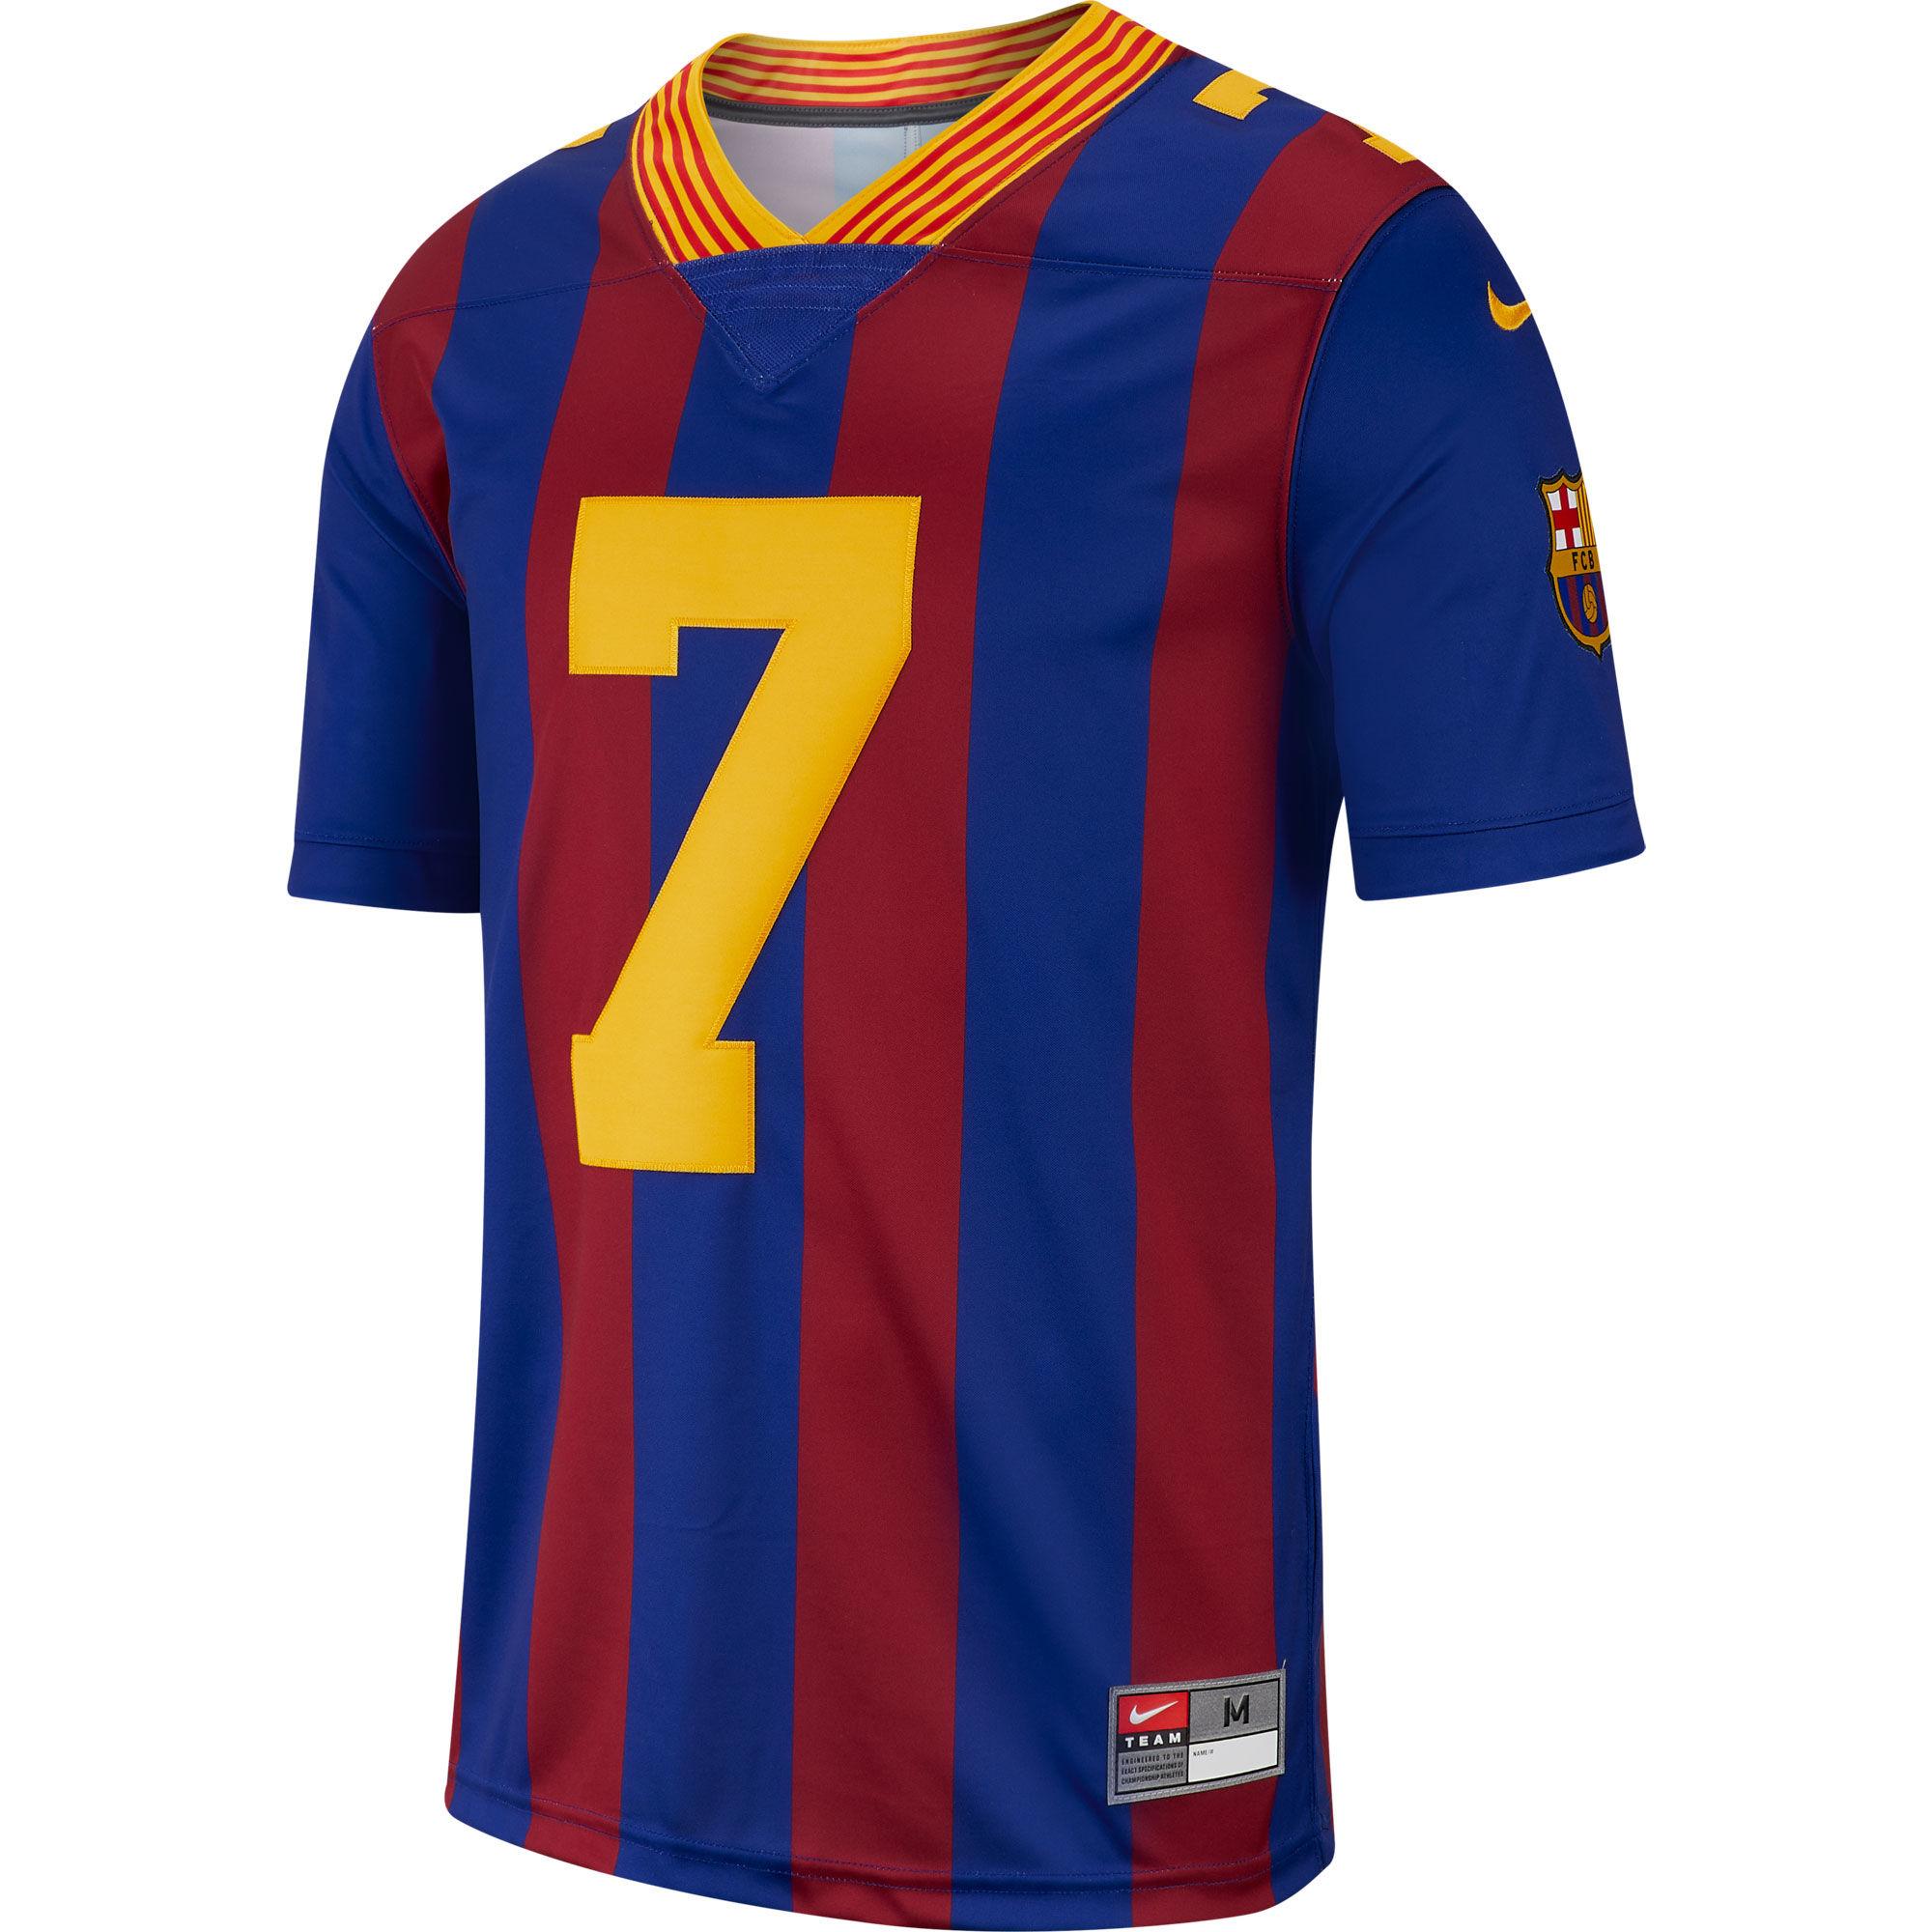 Barcelona - Dres fotbalový - číslo 7, Philippe Coutinho, modročervený, limitovaná edice